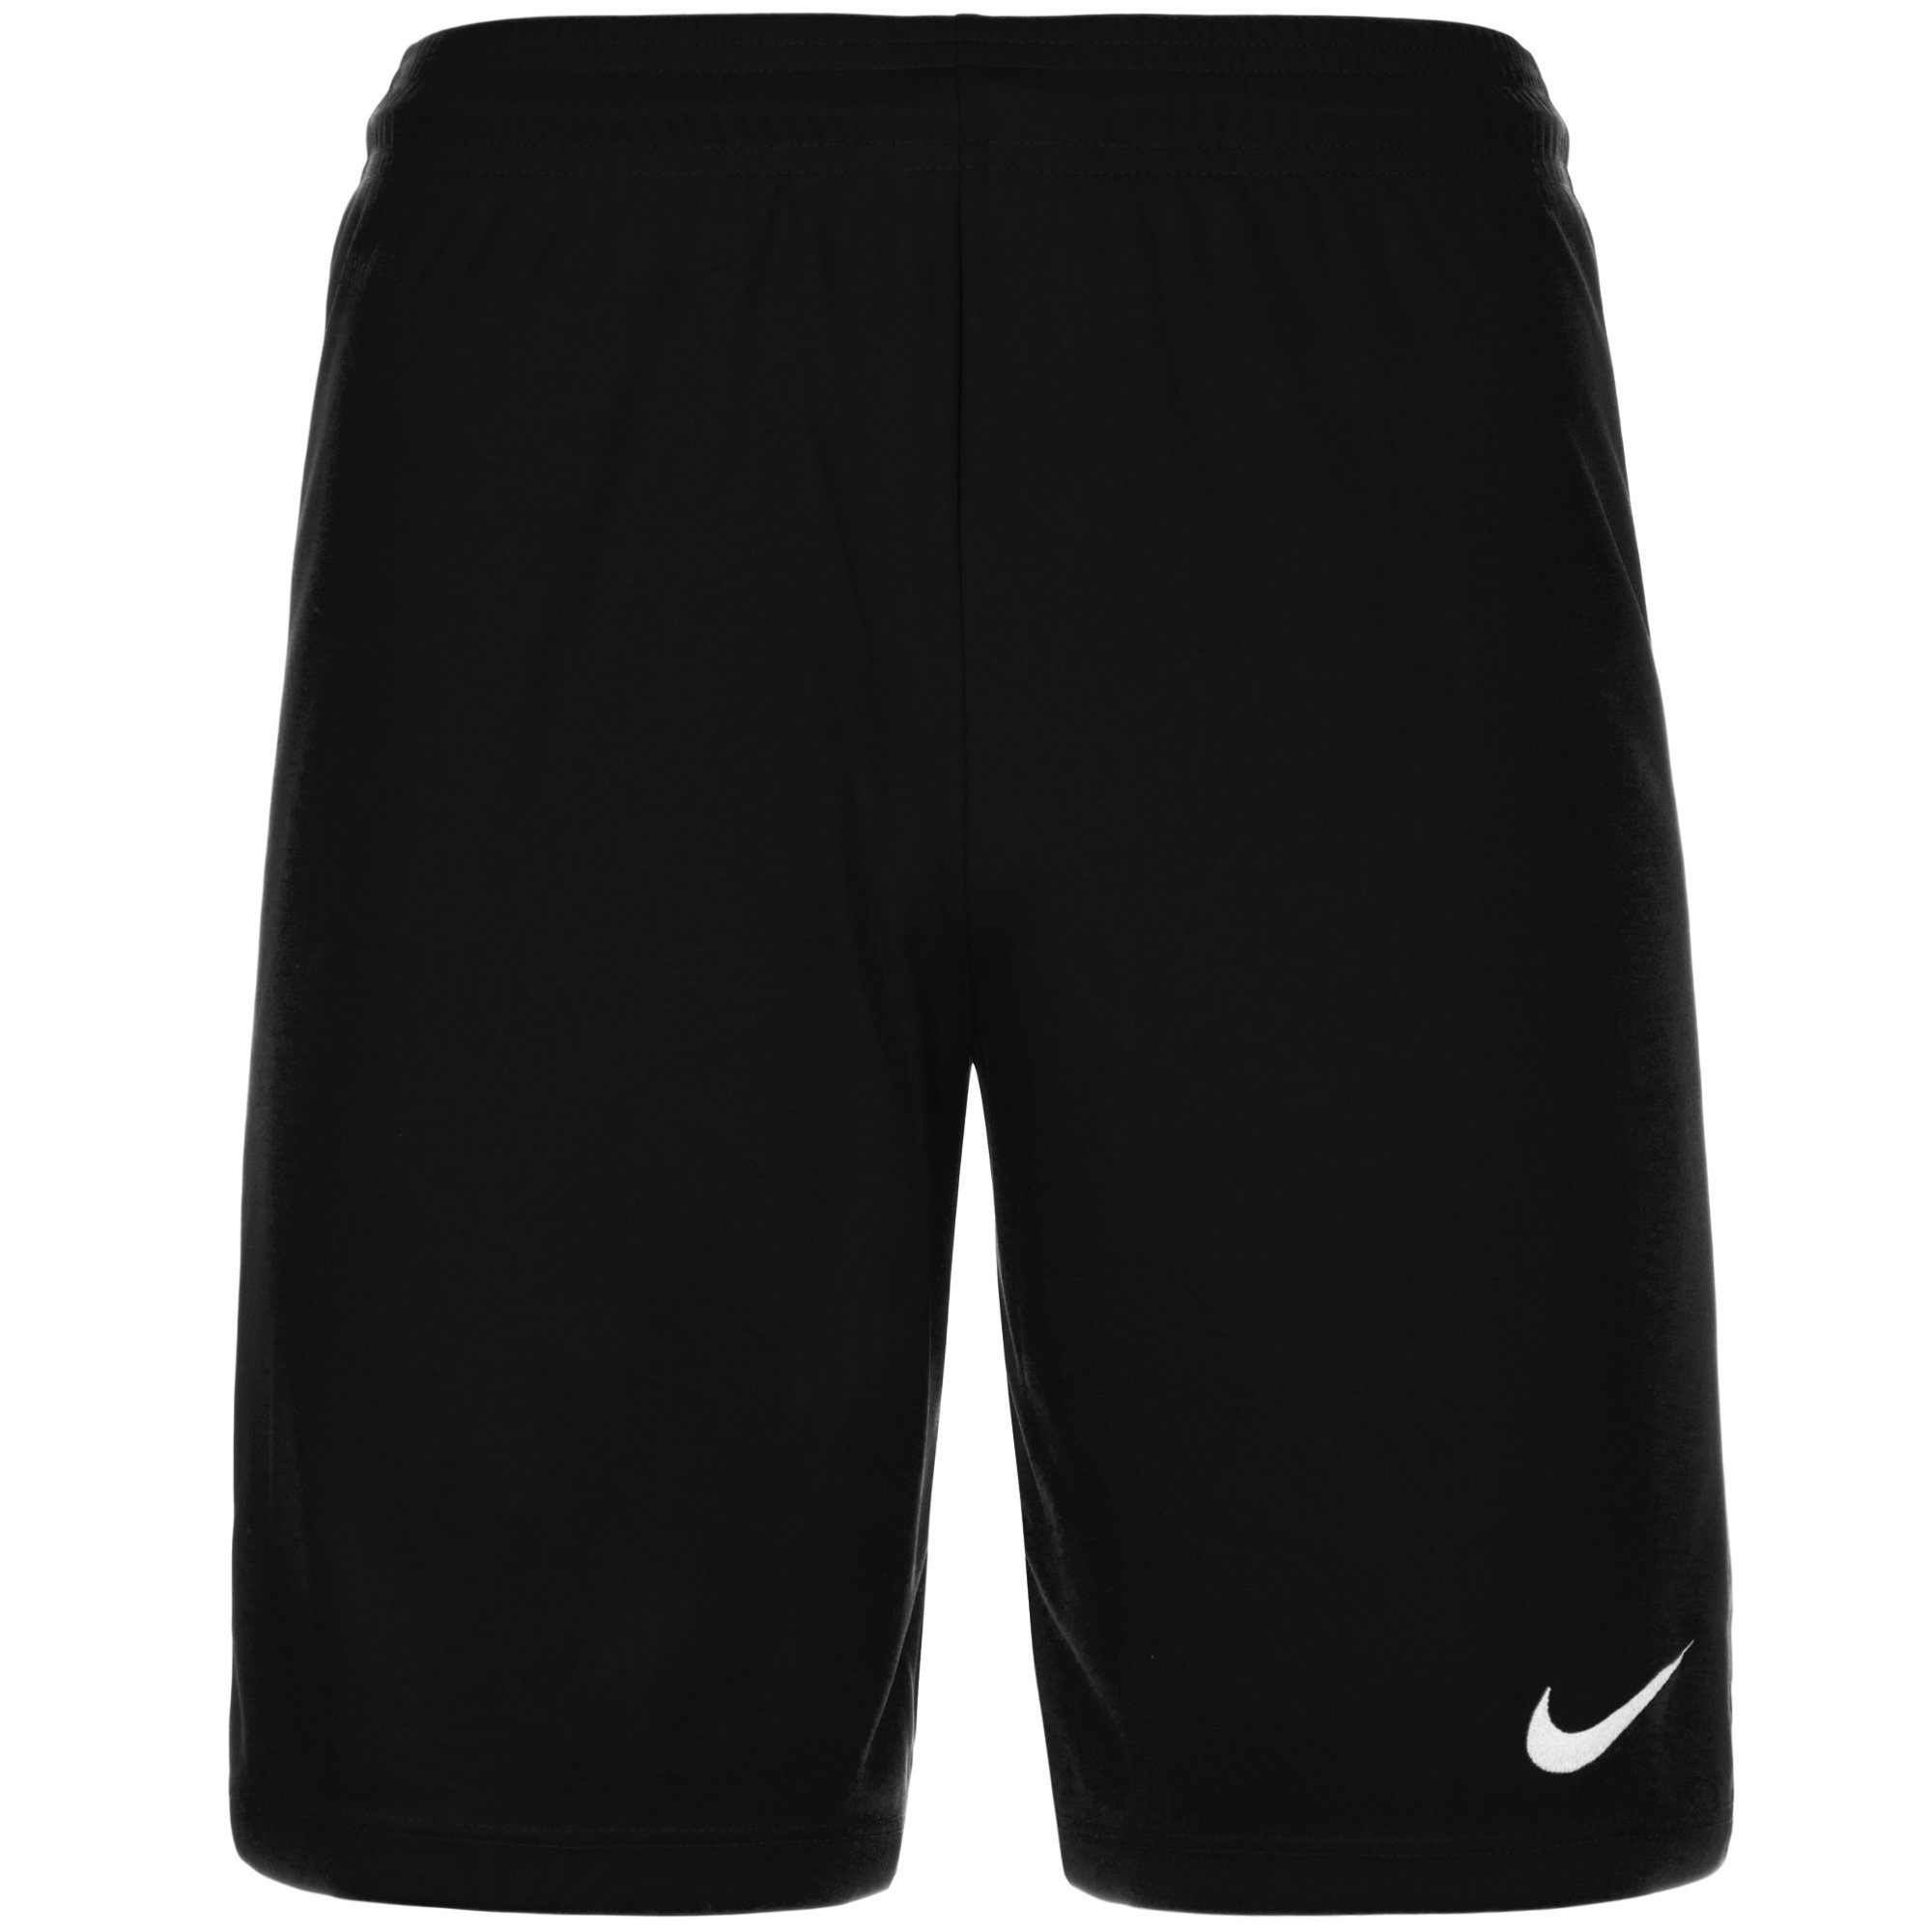 Schwarze Shorts online kaufen | OTTO